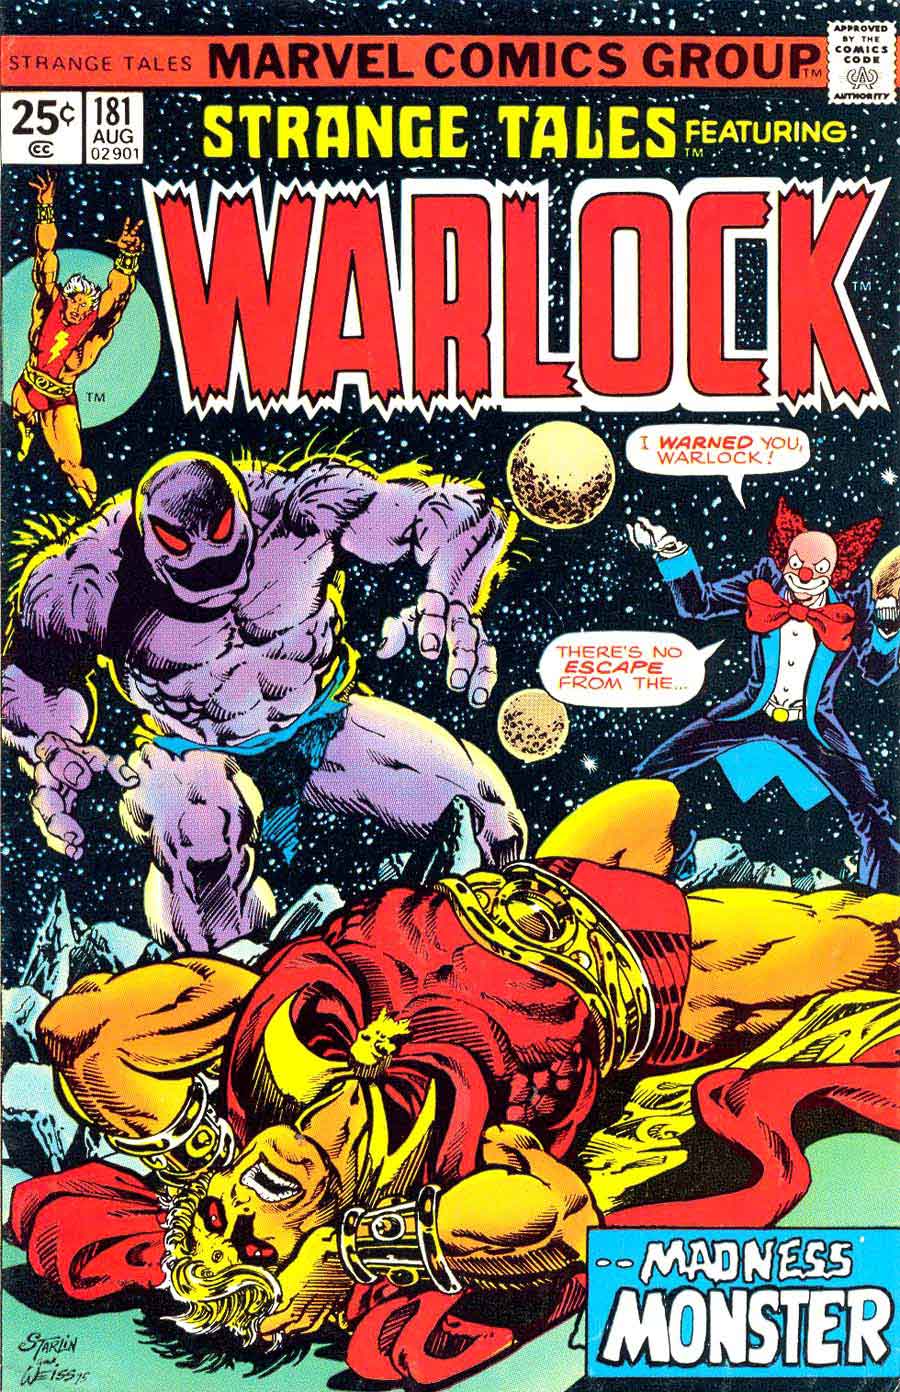 Strange Tales v1 #181 marvel warlock comic book cover art by Jim Starlin